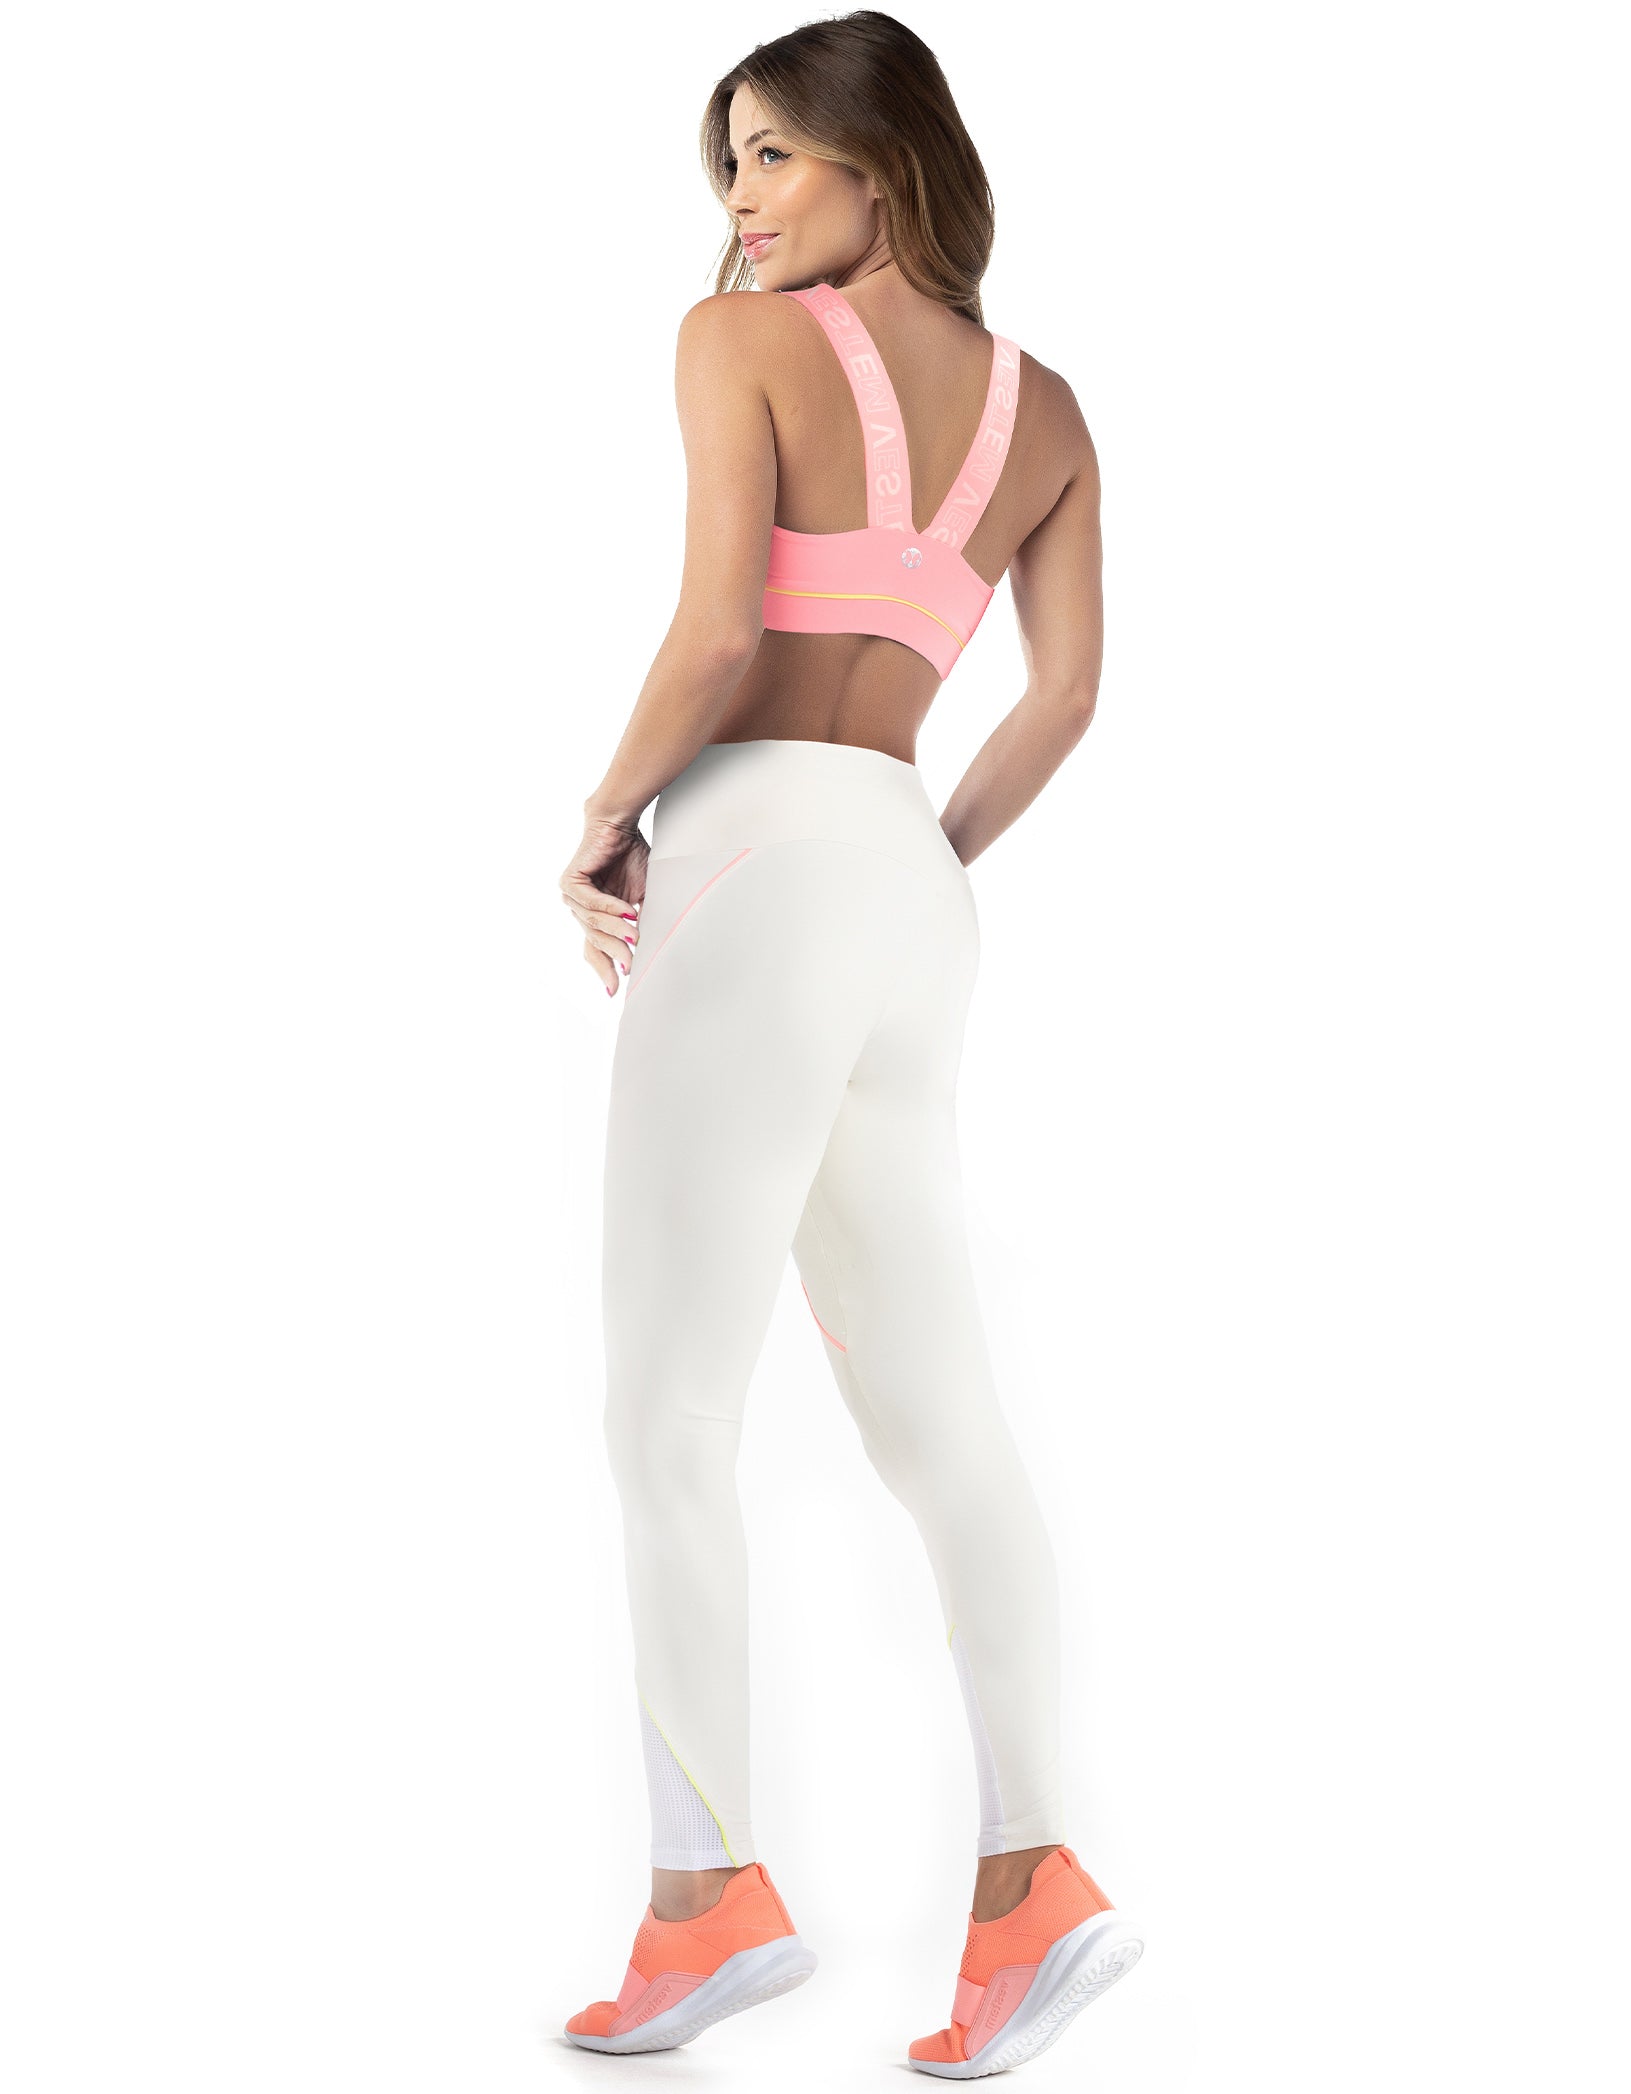 Vestem - Leggingss leggings Hera Off White - FS1188.C0140